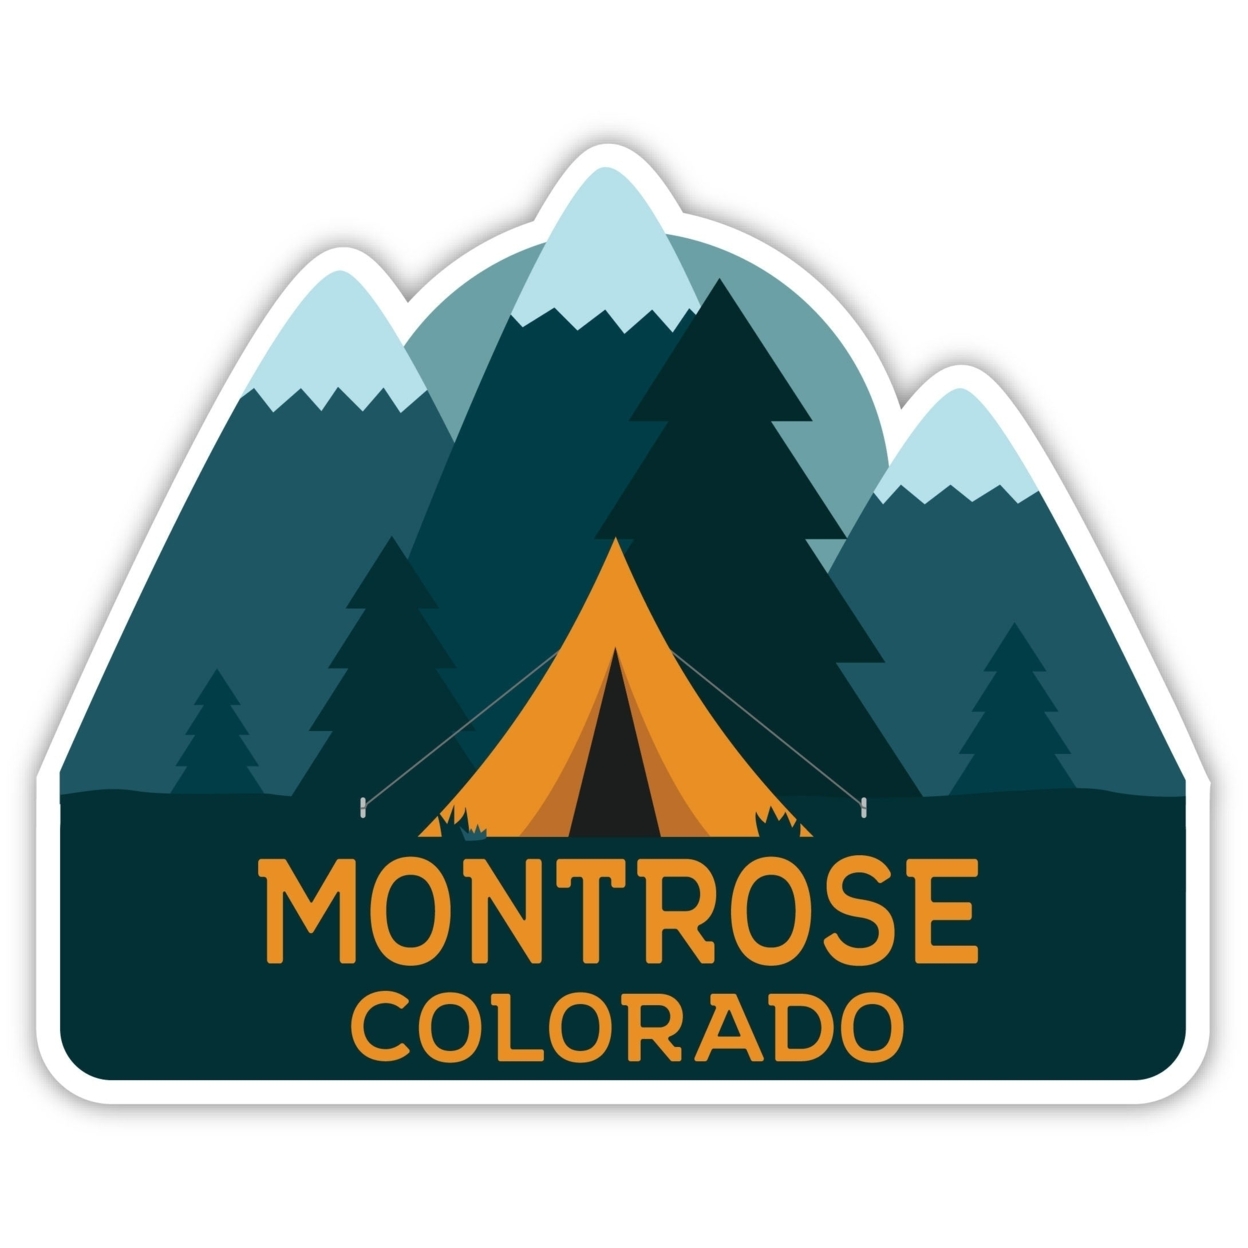 Montrose Colorado Souvenir Decorative Stickers (Choose Theme And Size) - Single Unit, 2-Inch, Tent